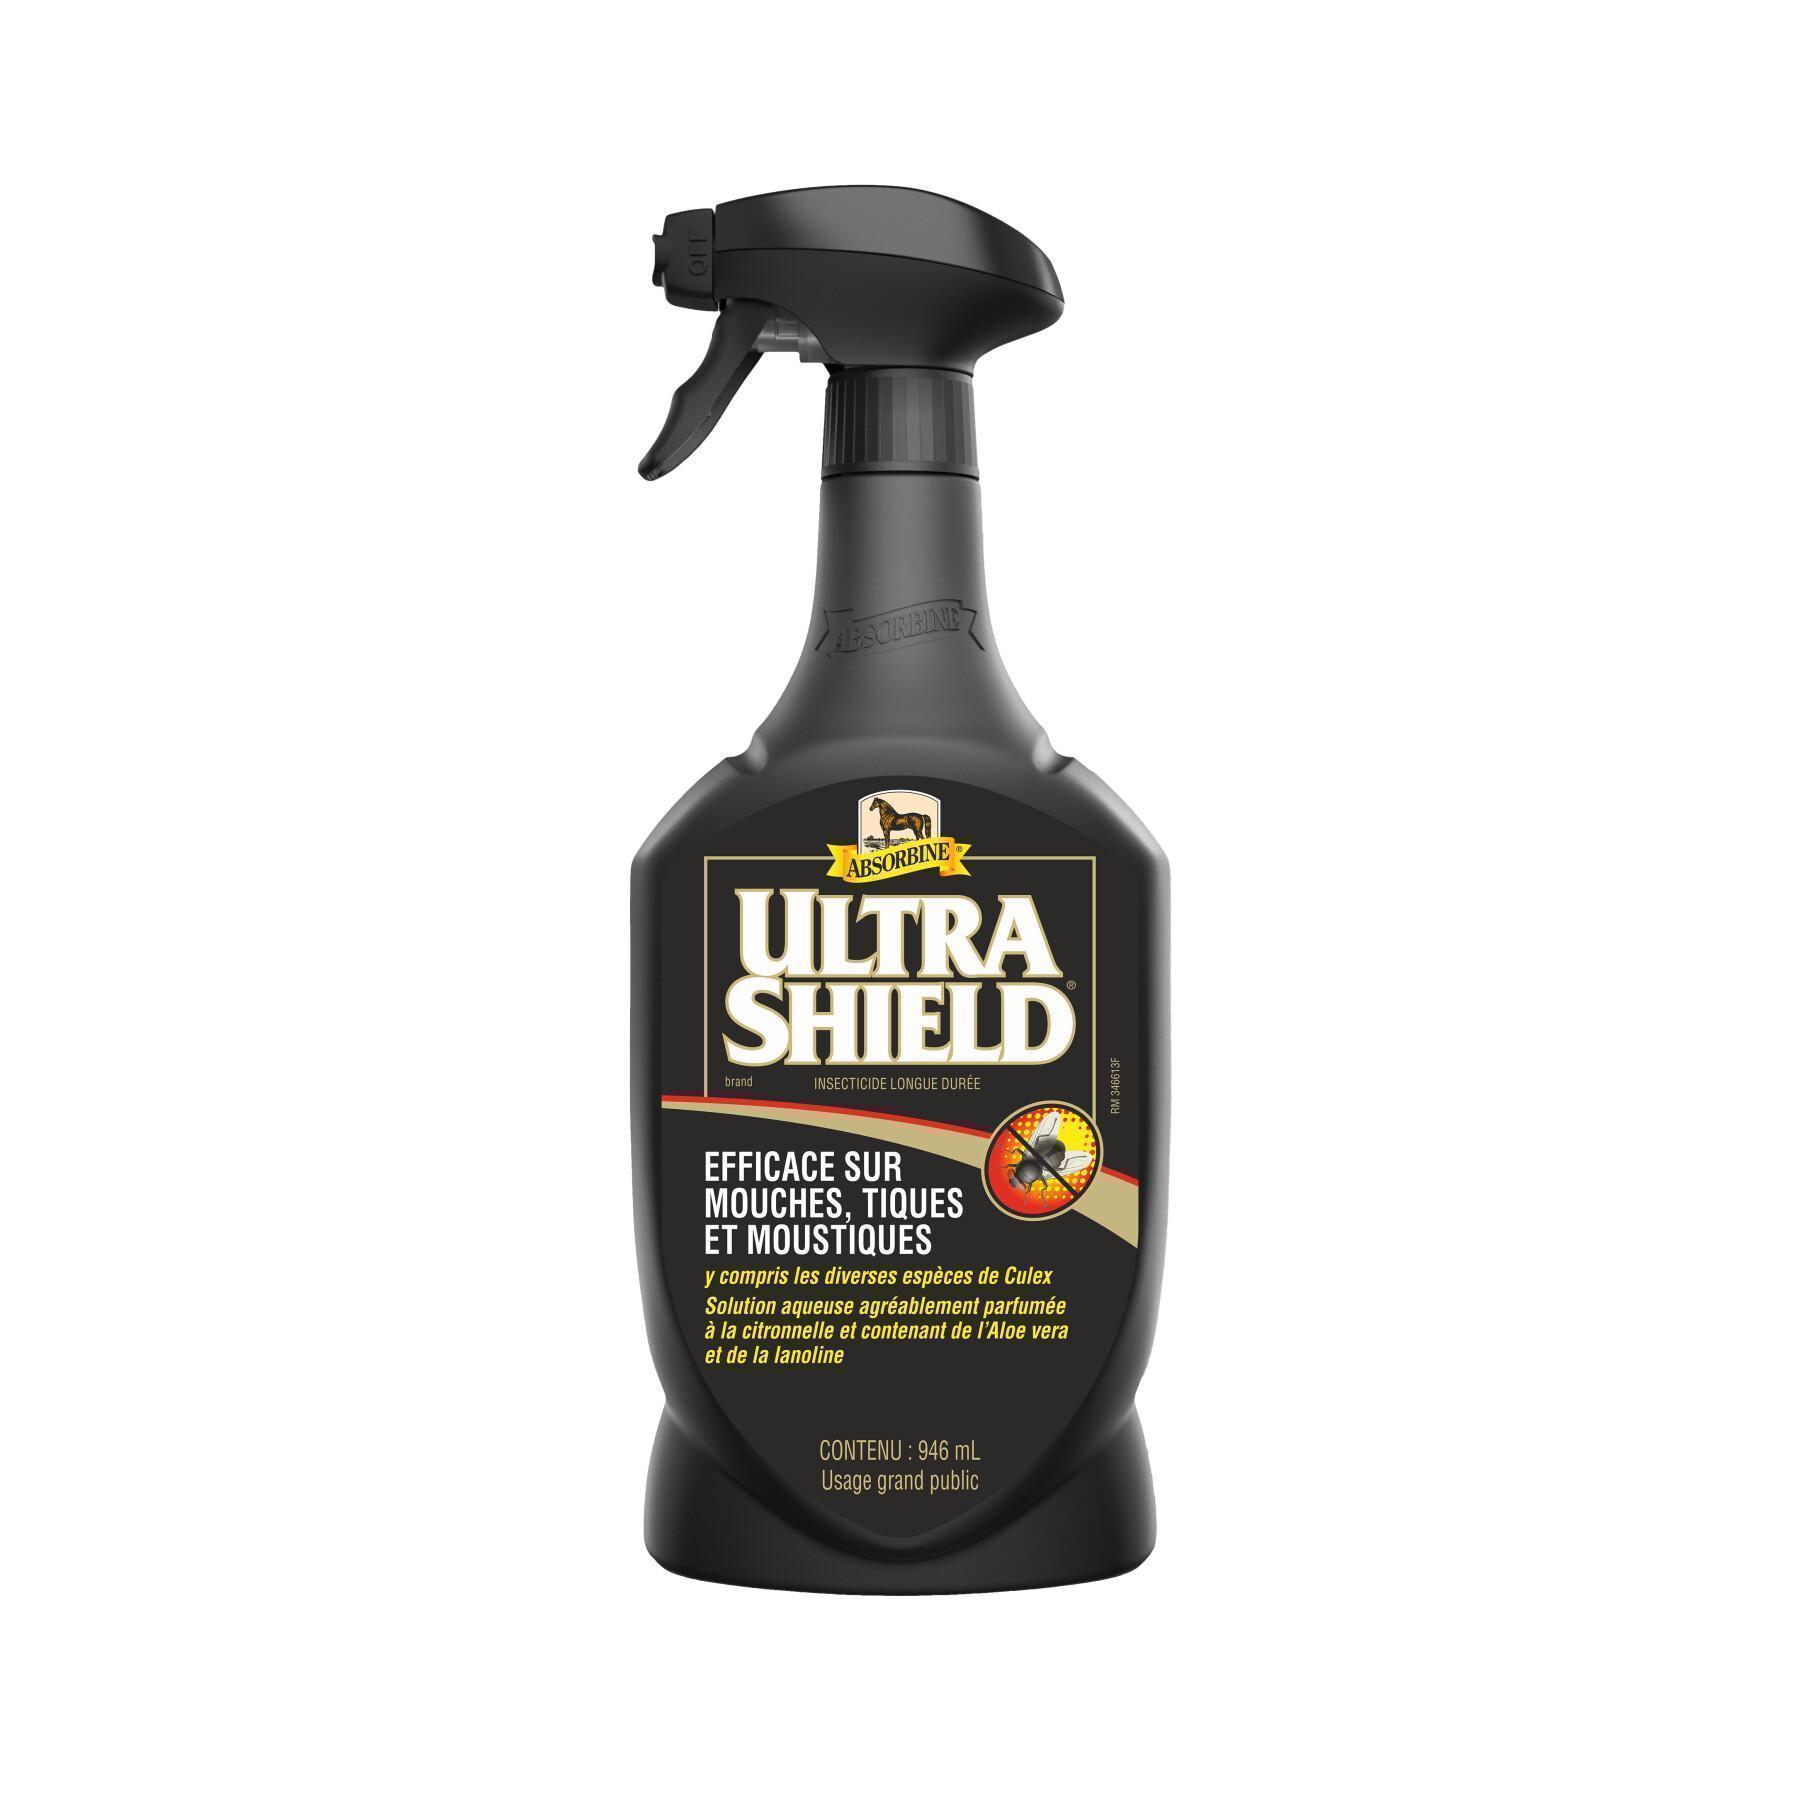 Spray przeciw insektom dla koni Absorbine Ultrashiled